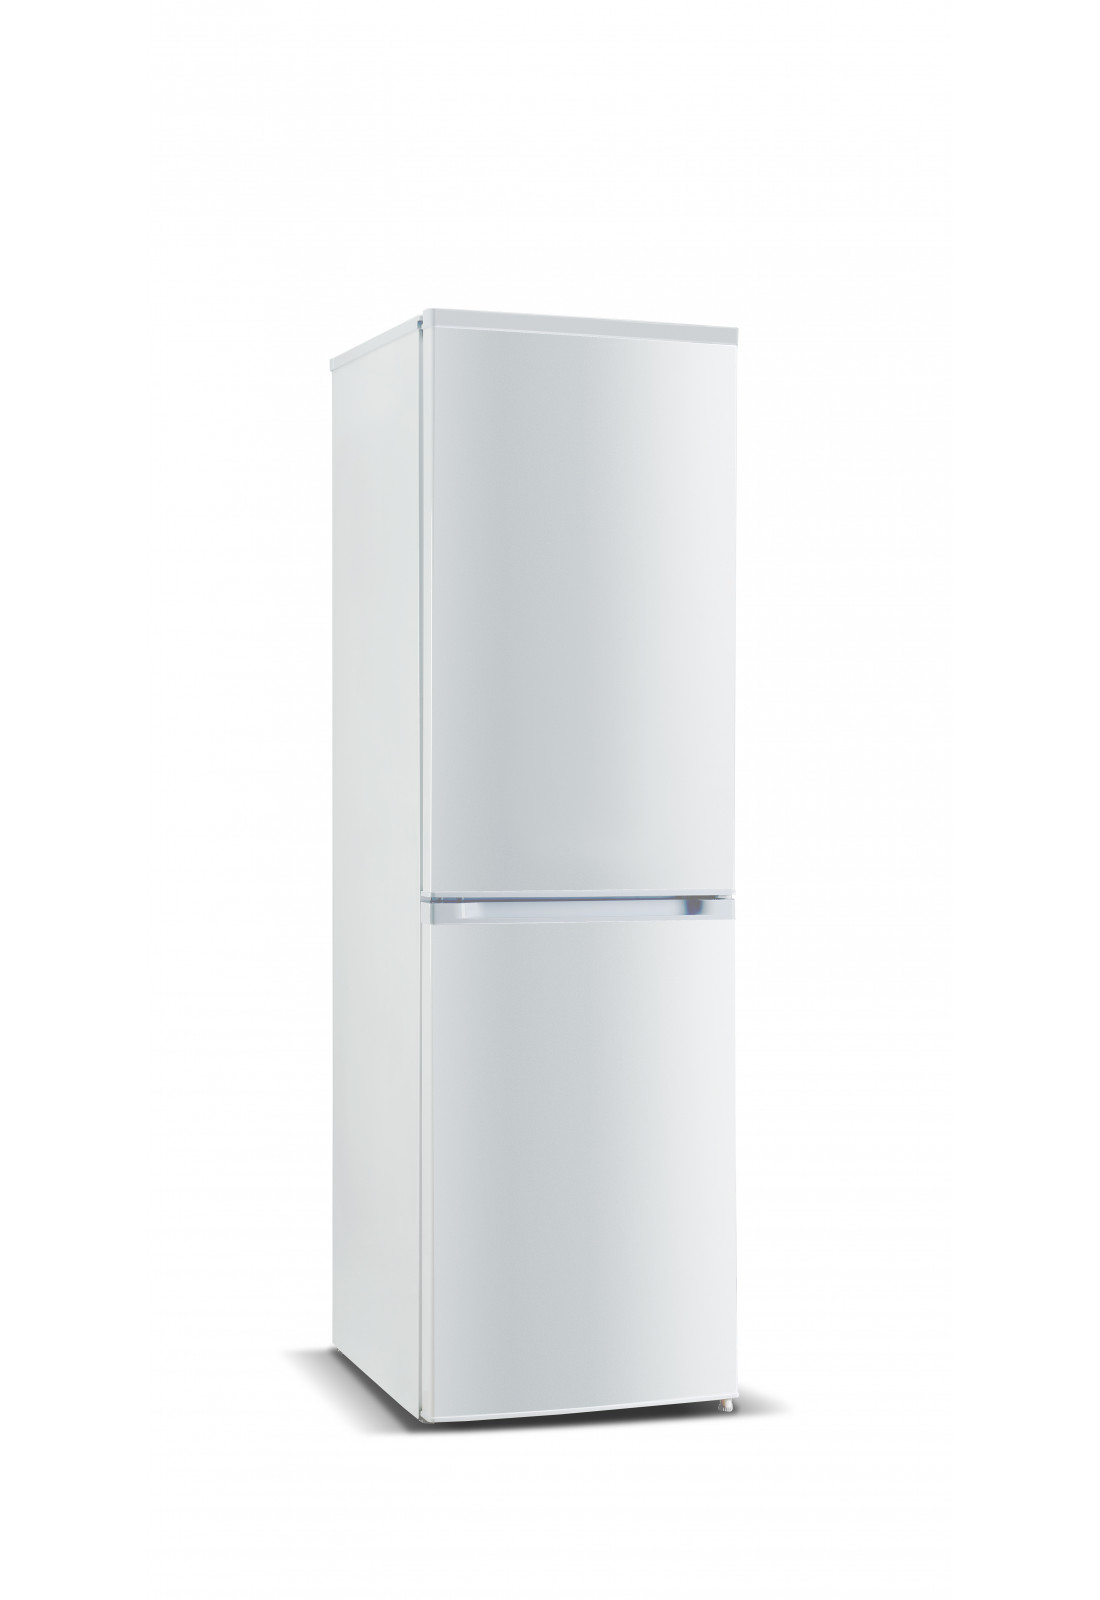 Дверь морозильной камеры холодильника NORD B 185